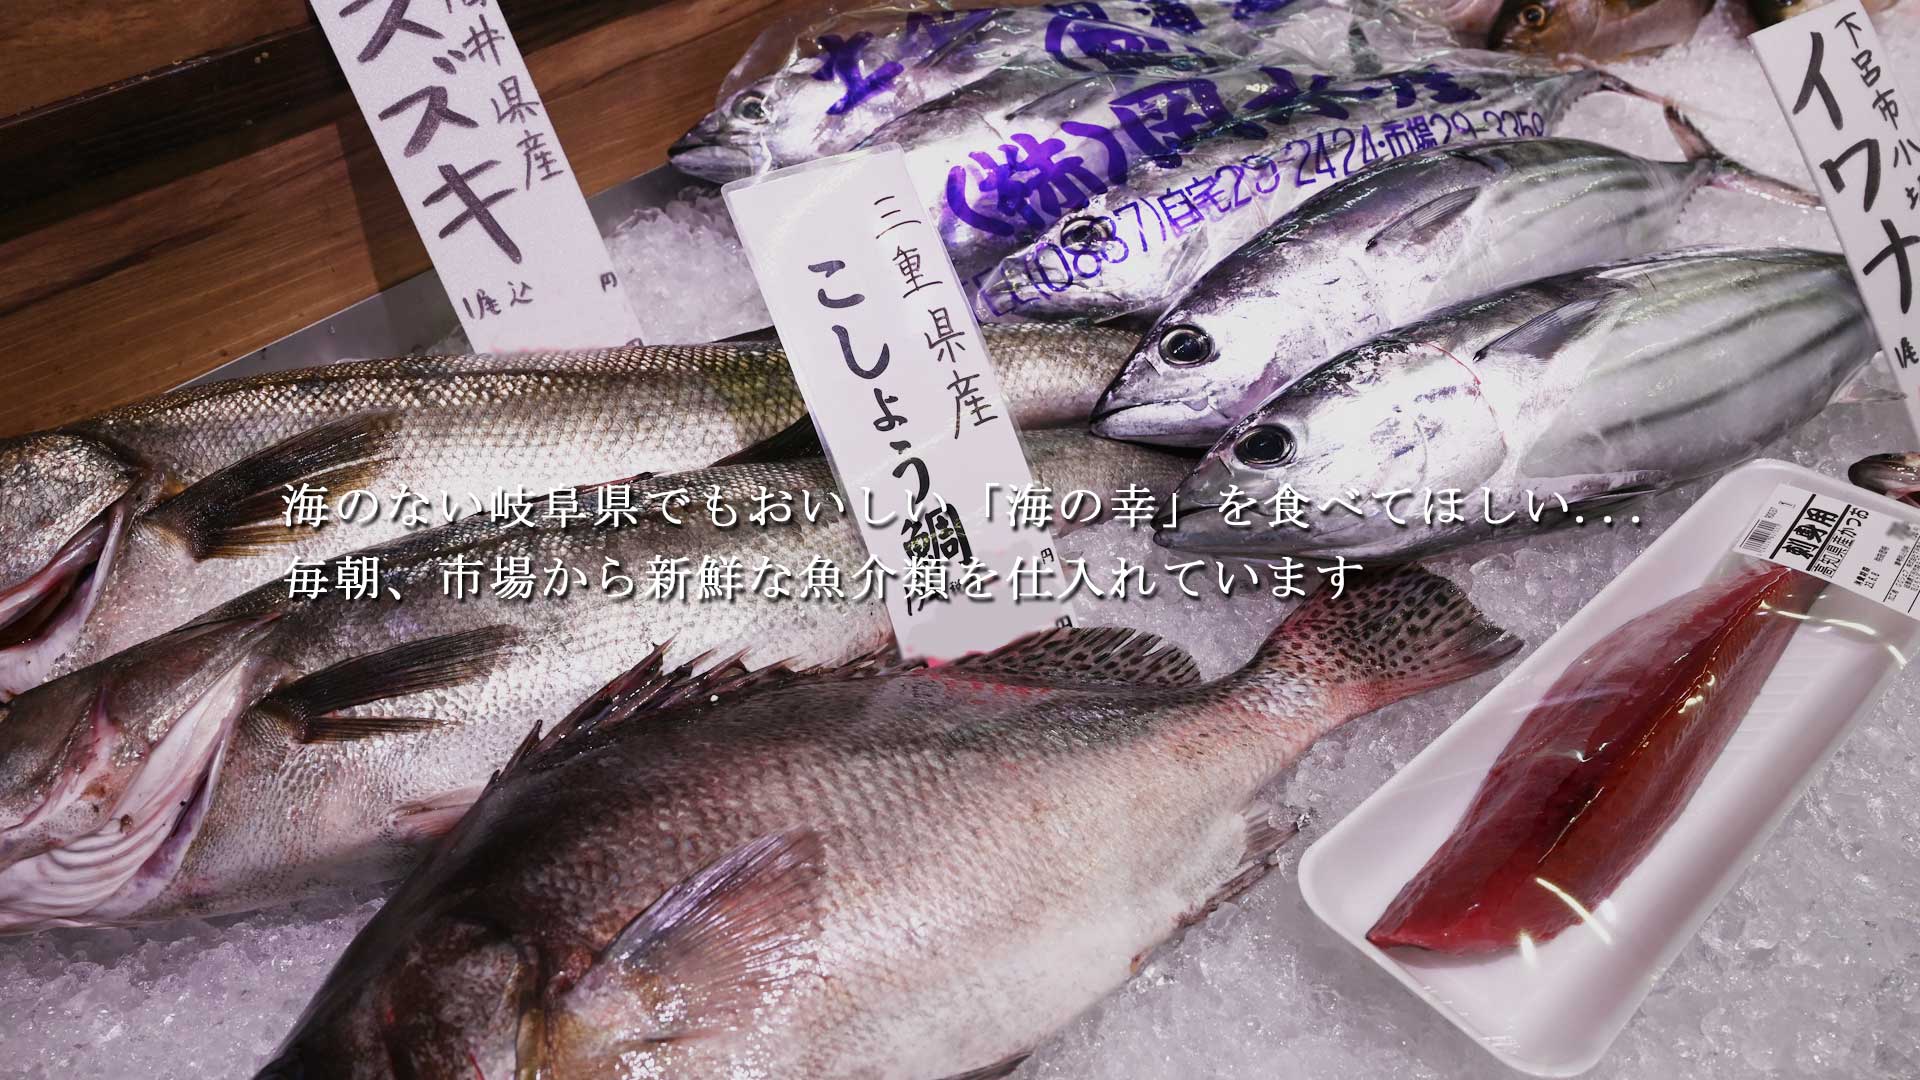 海のない岐阜県でもおいしい「海の幸」を食べてほしい…　毎朝、市場から新鮮な魚介類を仕入れています。